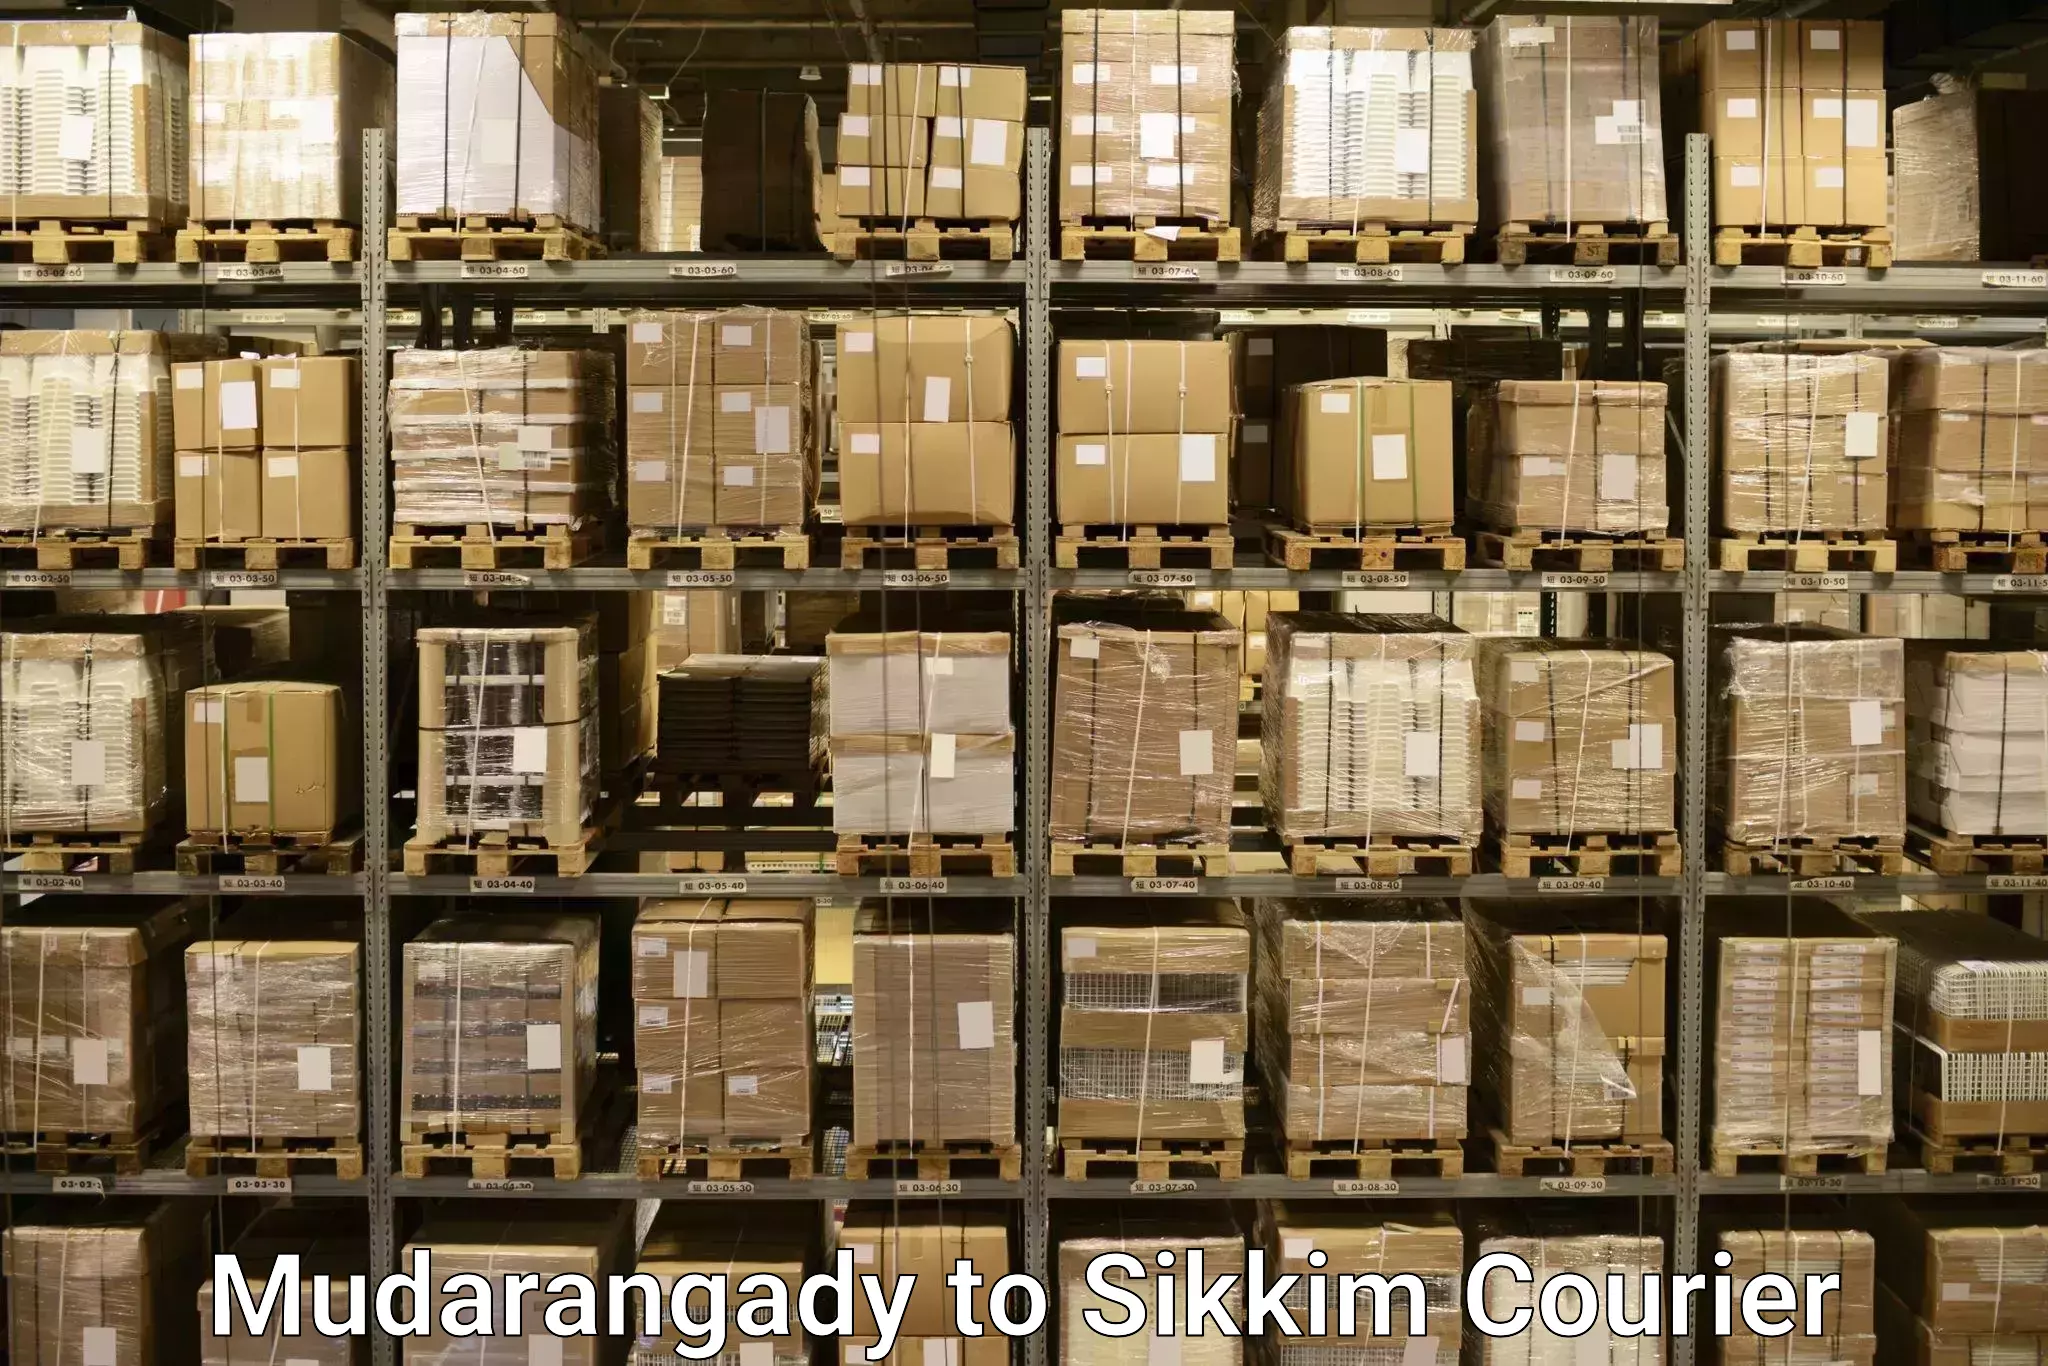 Baggage courier optimization Mudarangady to Geyzing